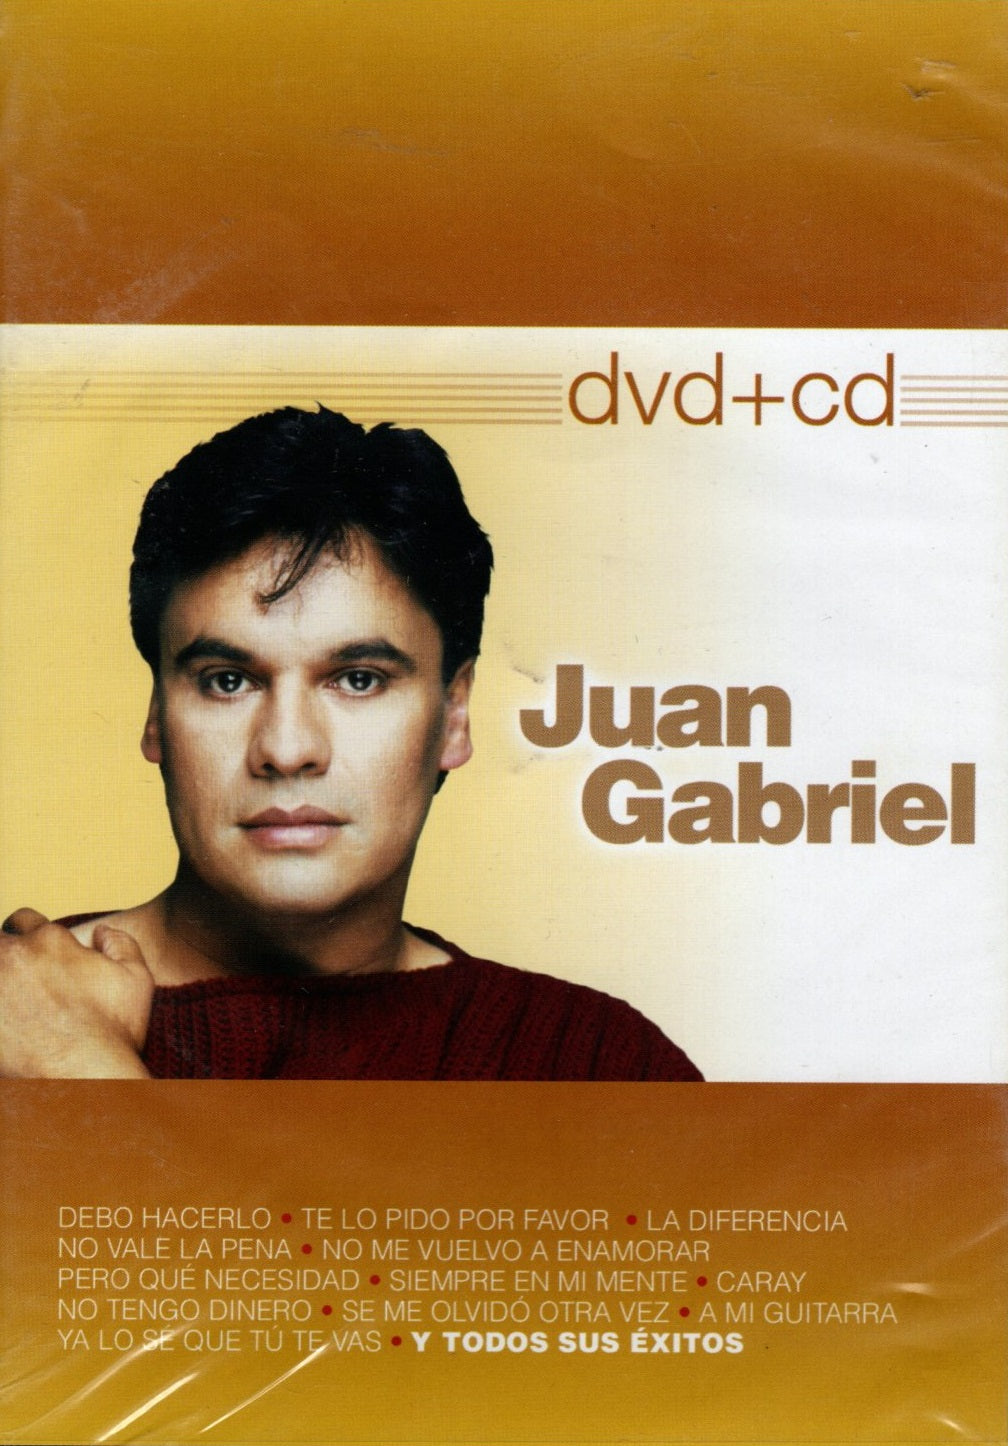 CD + DVD Juan Gabriel – Juan Gabriel